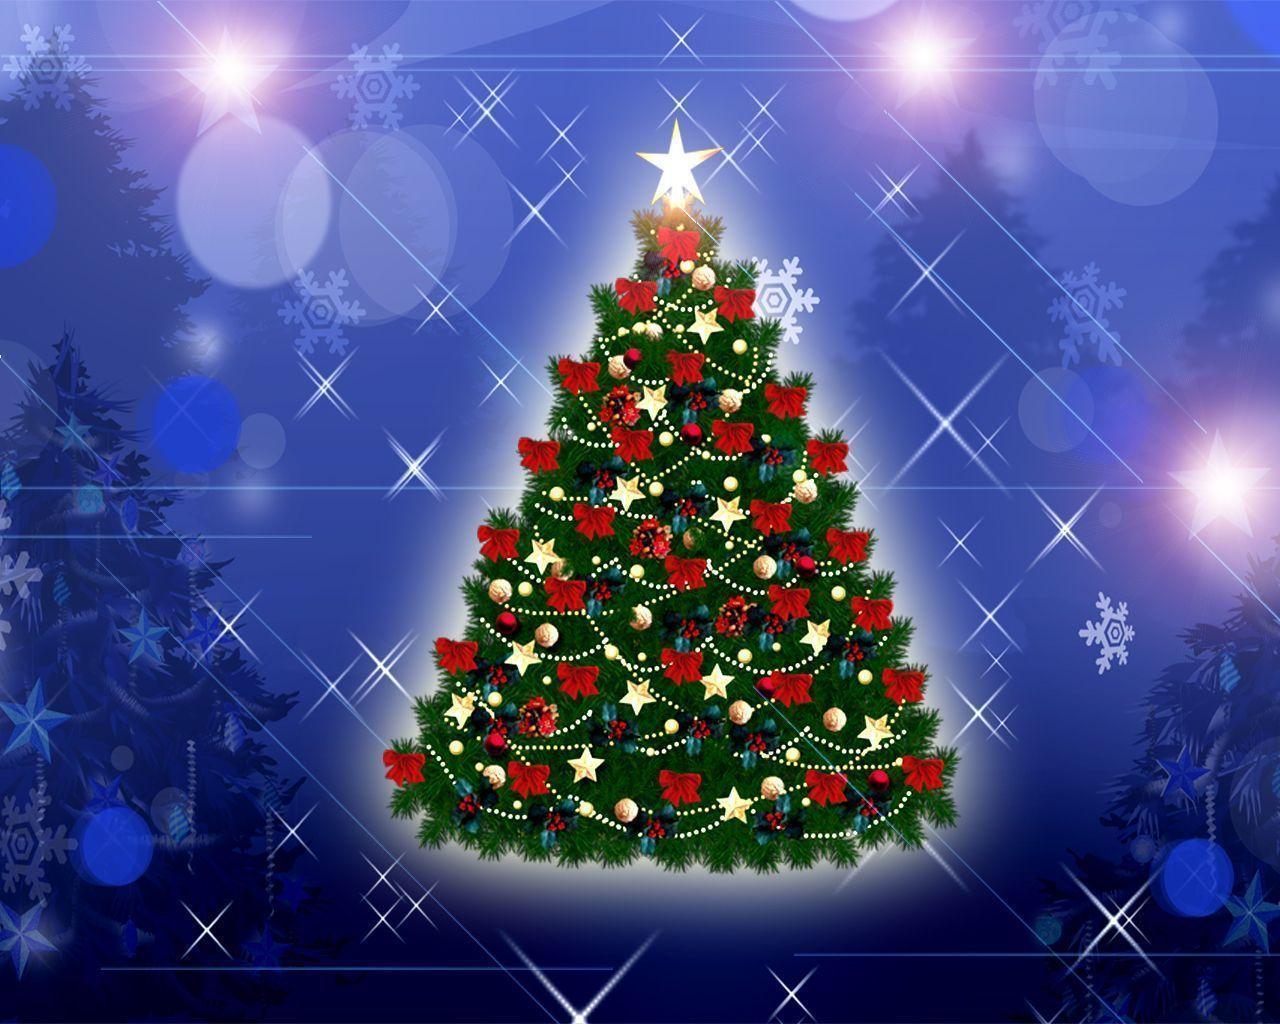 10 Christmas Wallpaper Free Christmas Tree With Lights And Balls